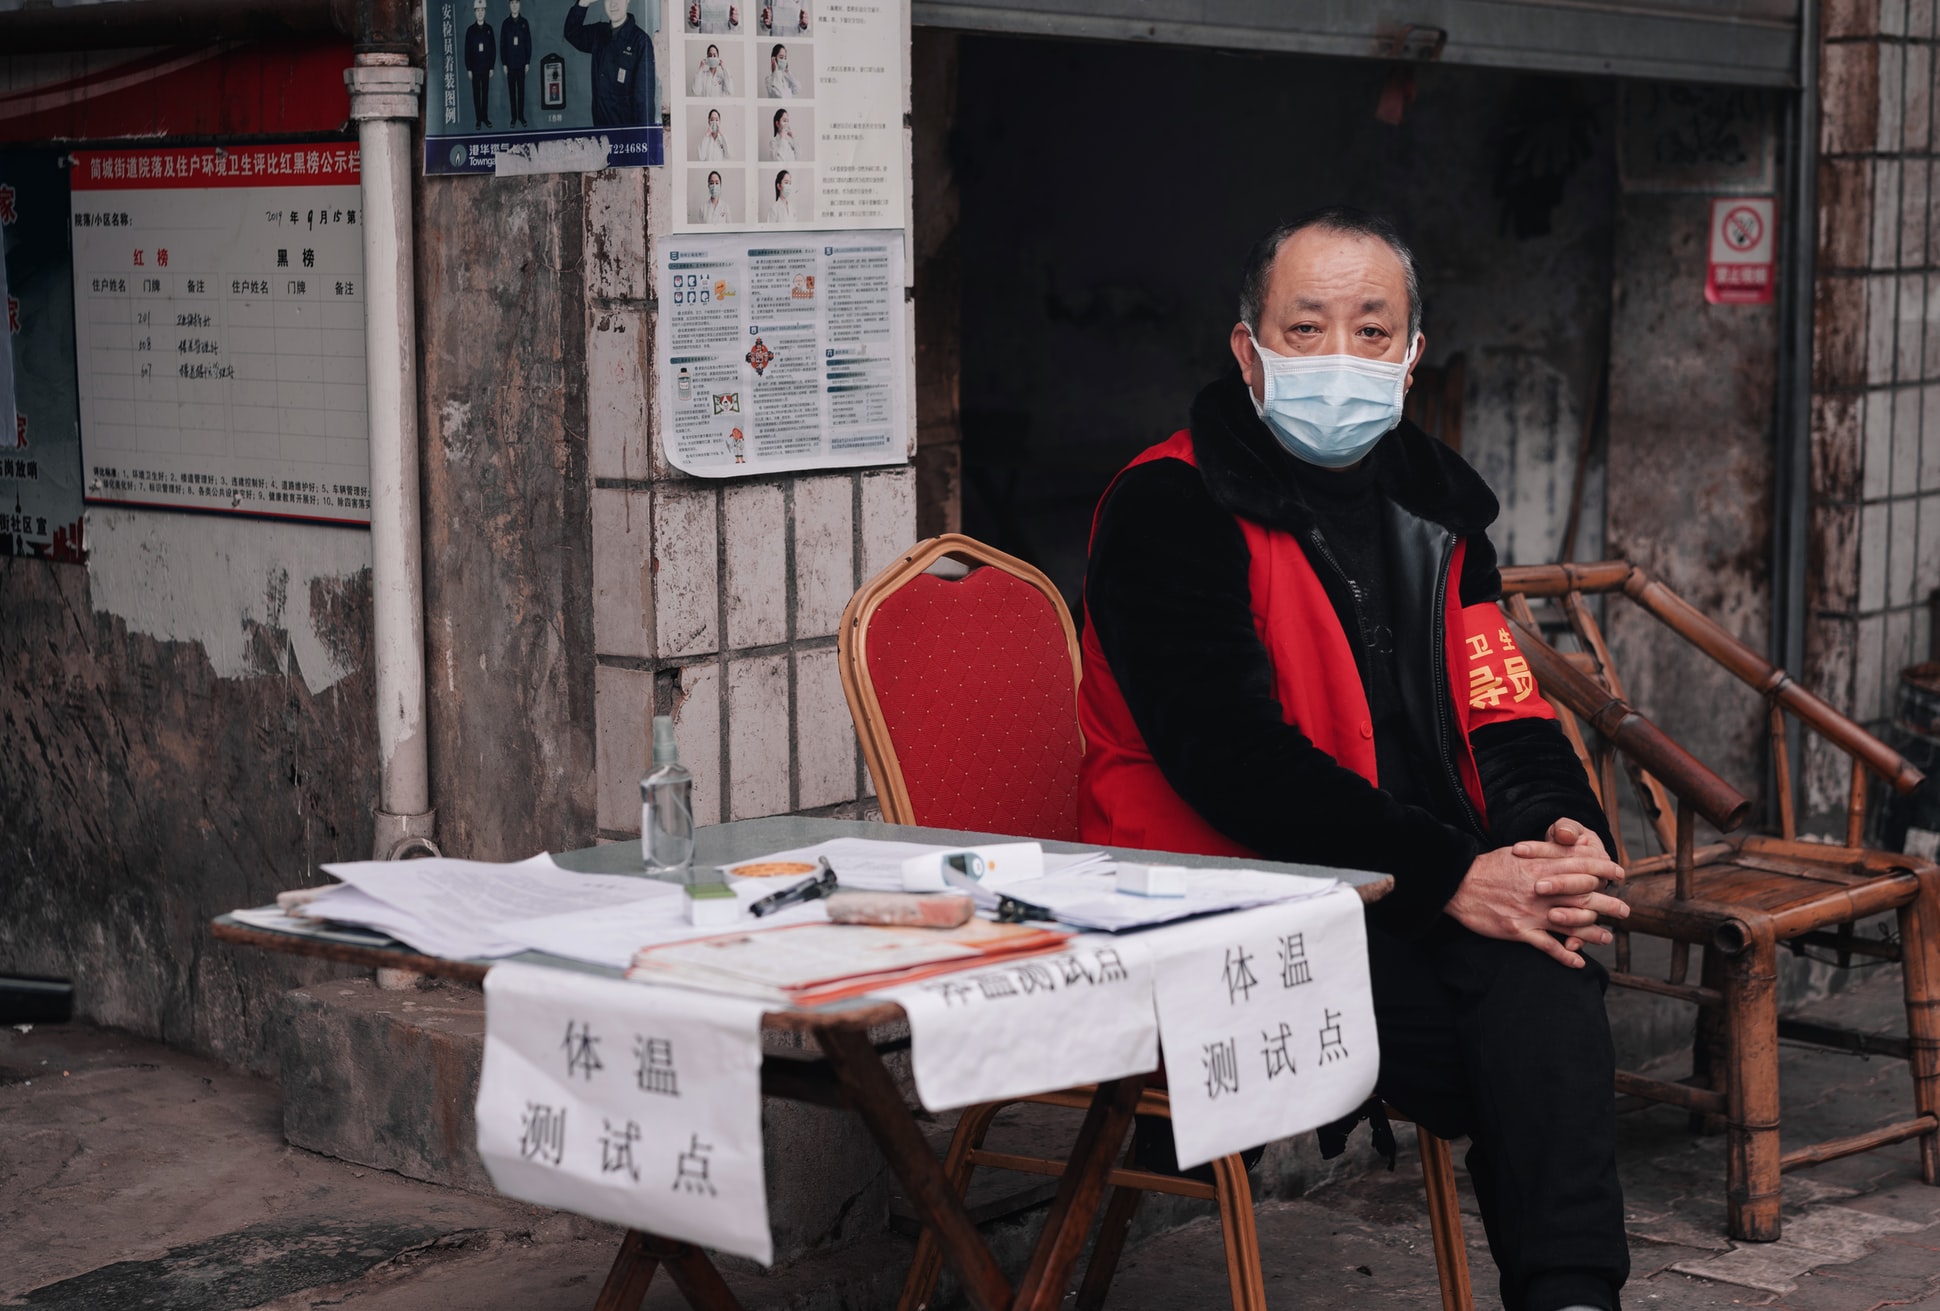 En pleine épidémie de coronavirus, cet homme est chargé de prendre la température des passants afin de détecter les cas suspects, dans la province chinoise du Sichuan, en février 2020. (Crédit : Cheng Feng via Unsplash, libre de droits)